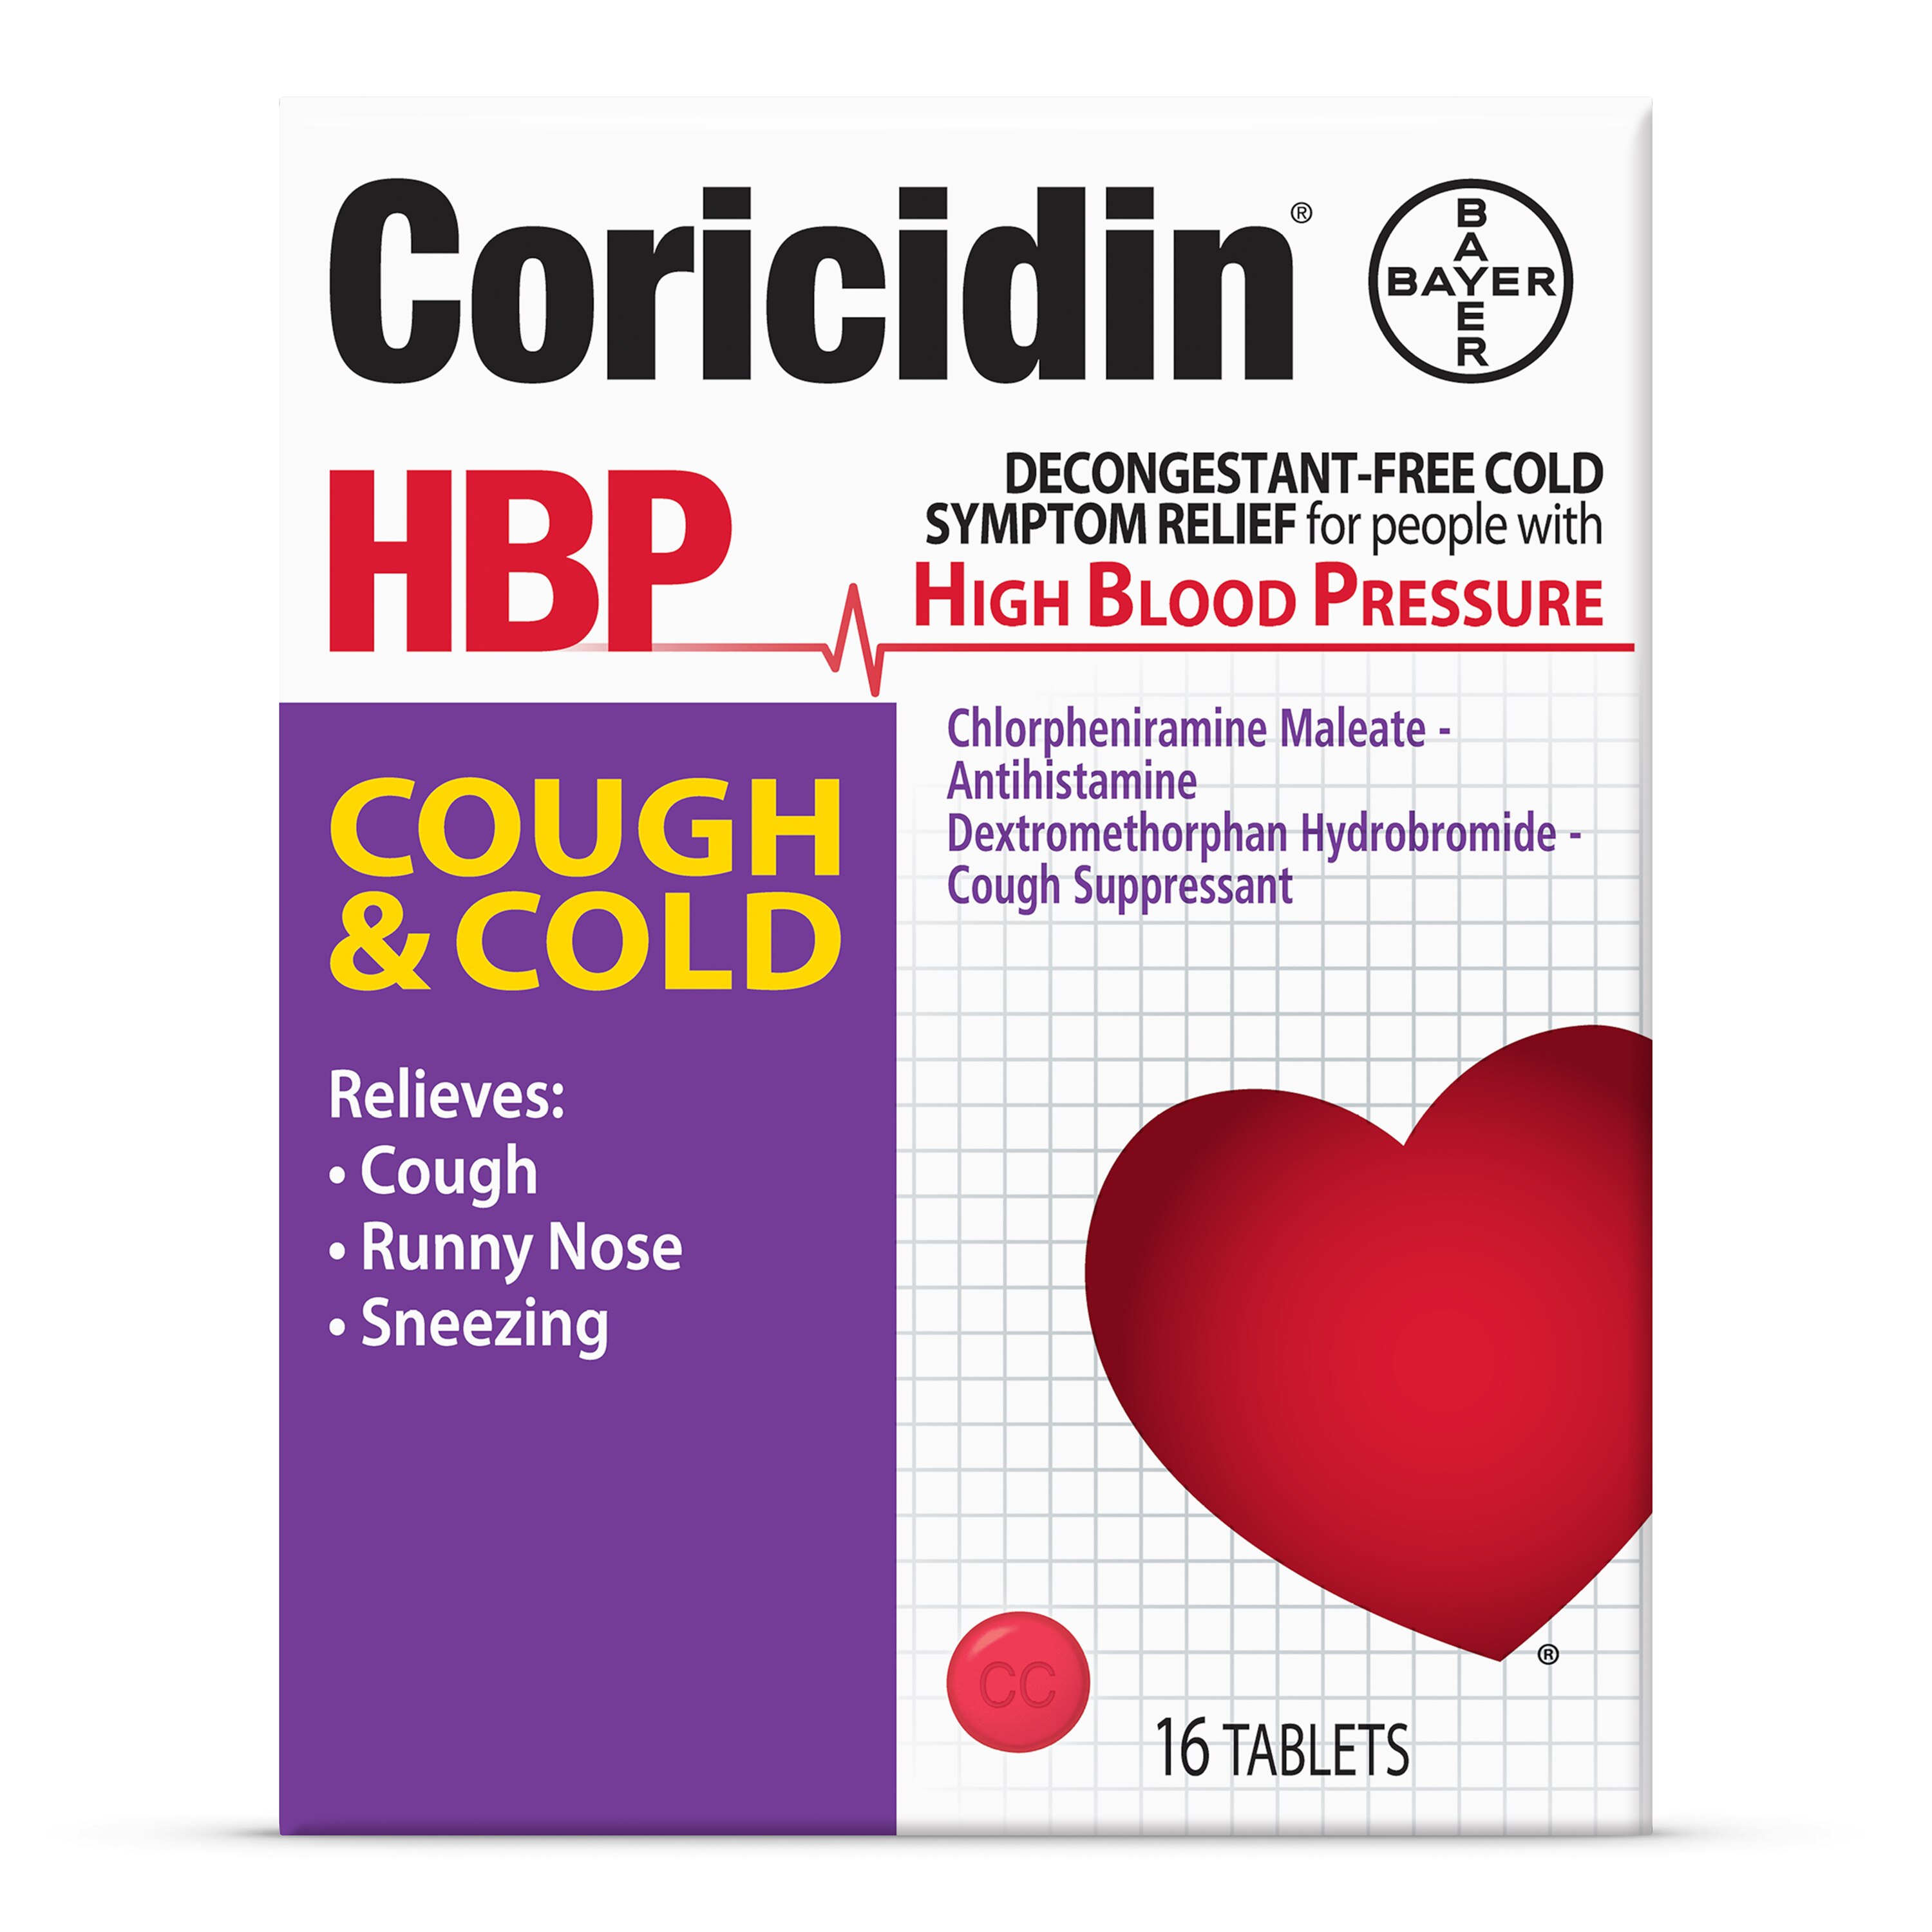 Coricidin HBP Cough & Cold - Medicamento para la tos y el resfriado sin descongestivos, para hipertensos, 16 u.